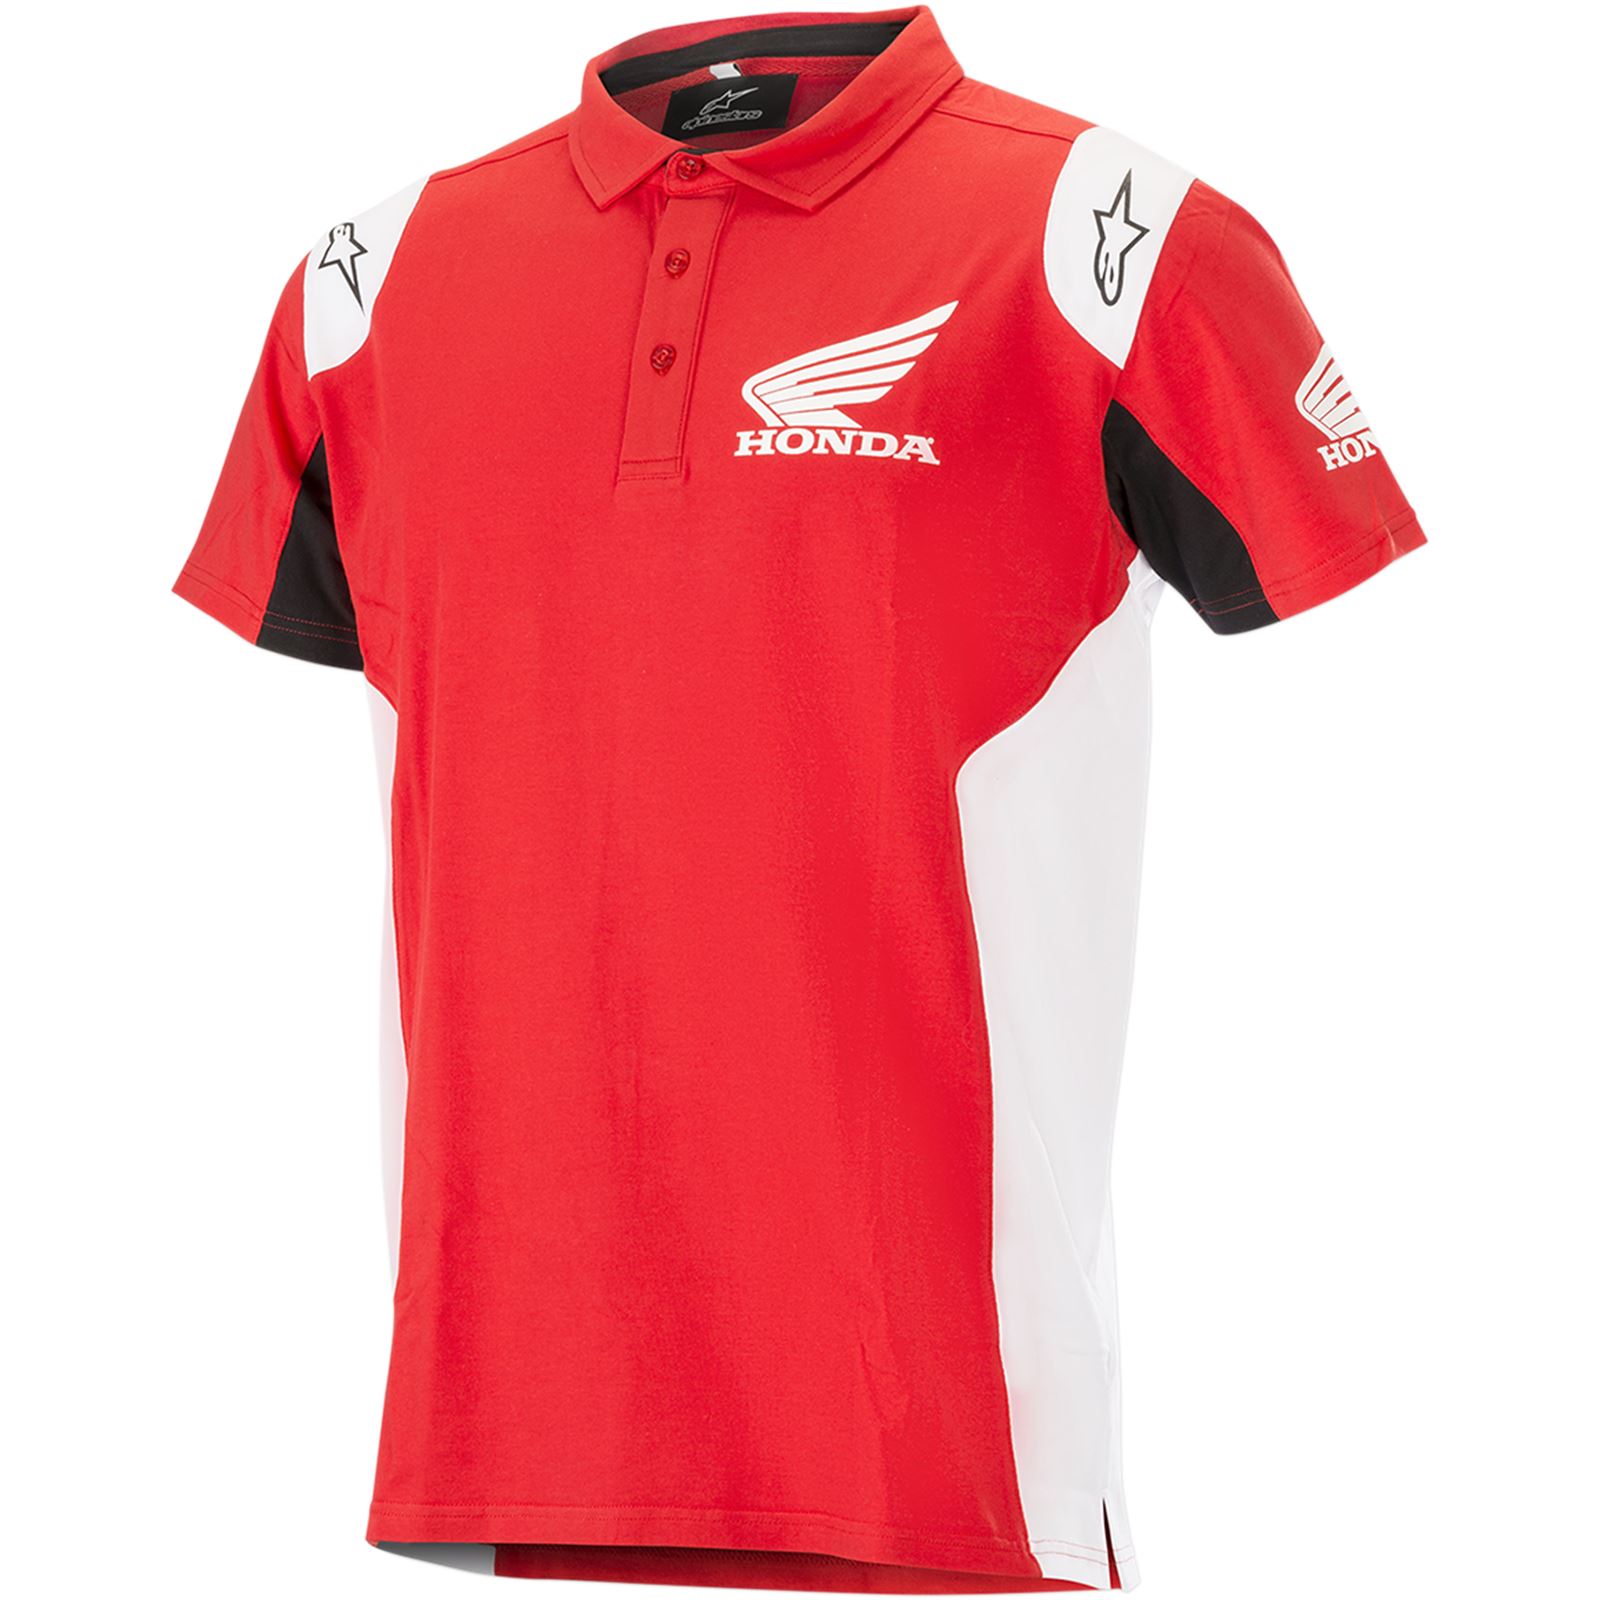 Alpinestars Honda Short Sleeve Shirt - Red - Large